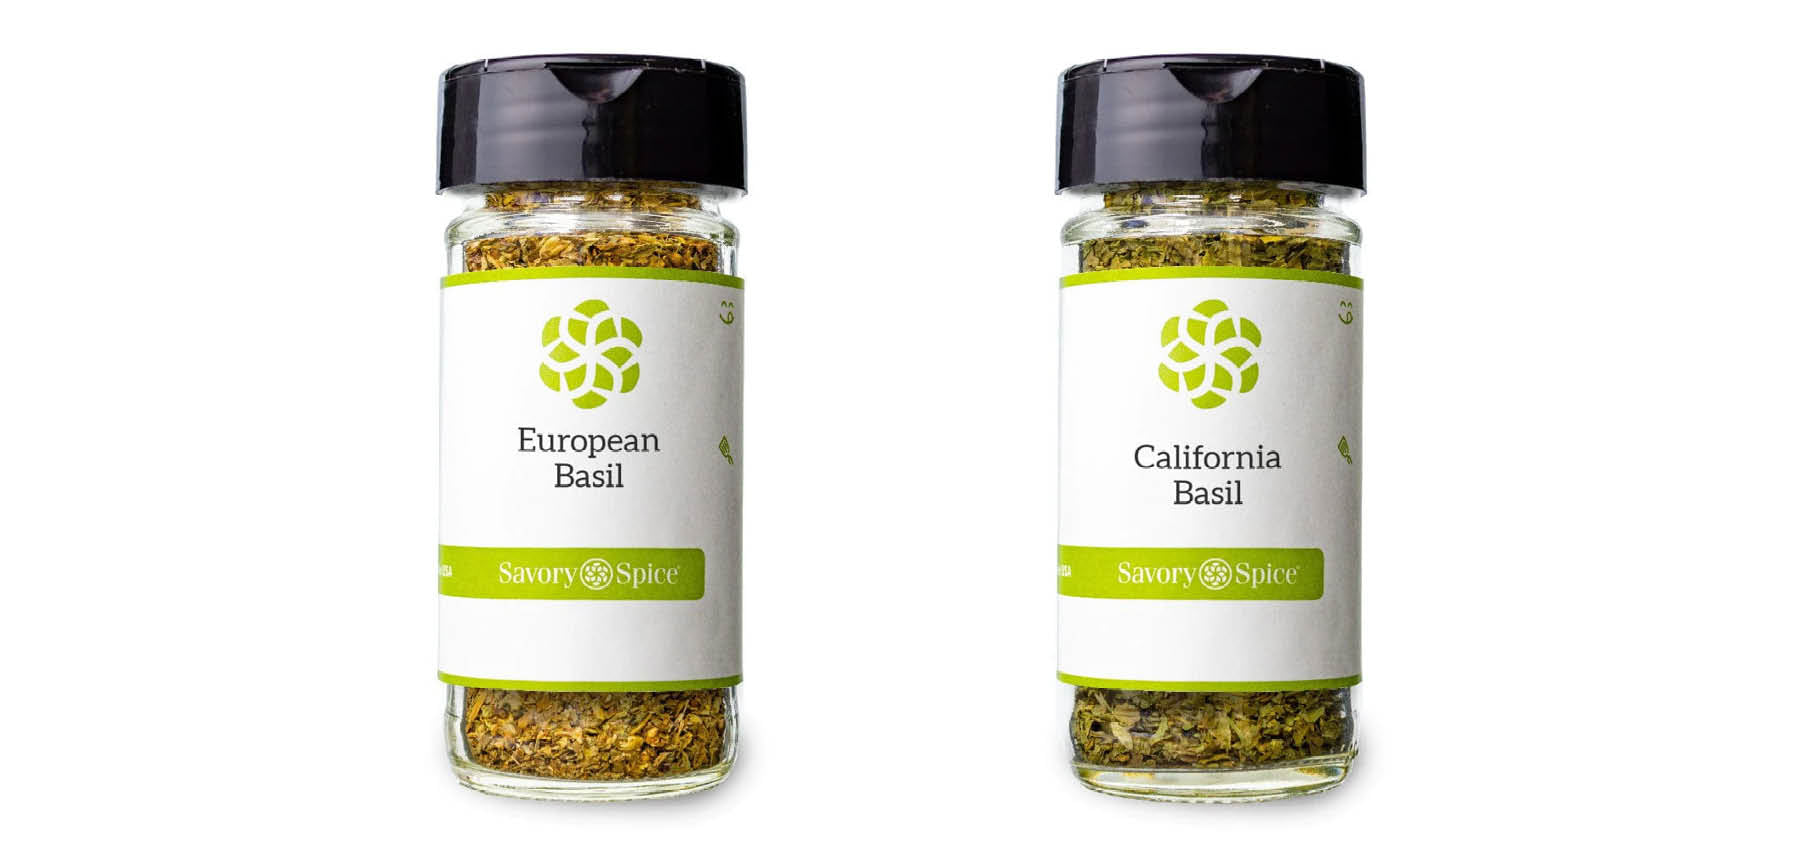 European Basil and California Basil in jars